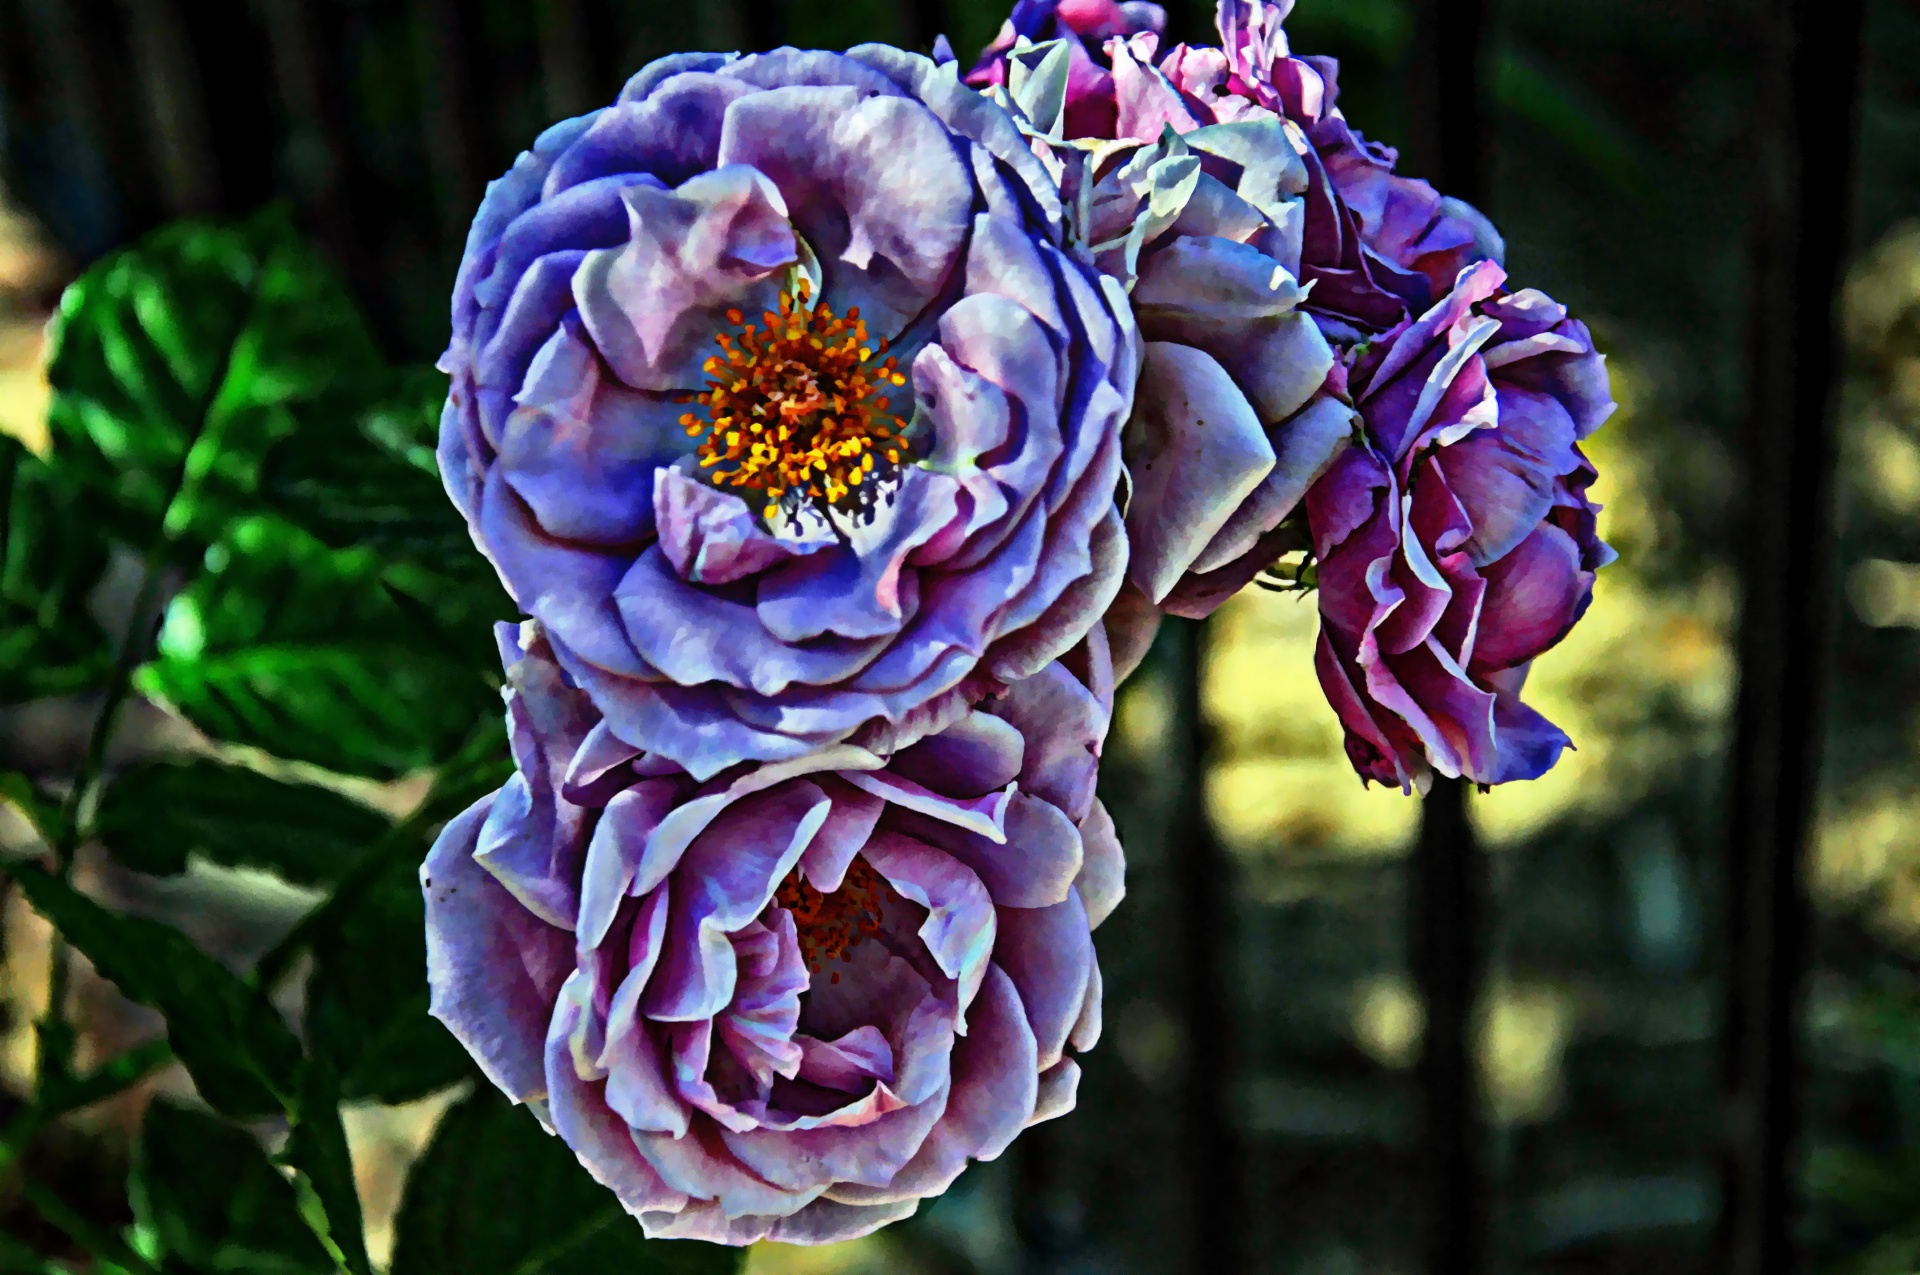 Three Purple Roses